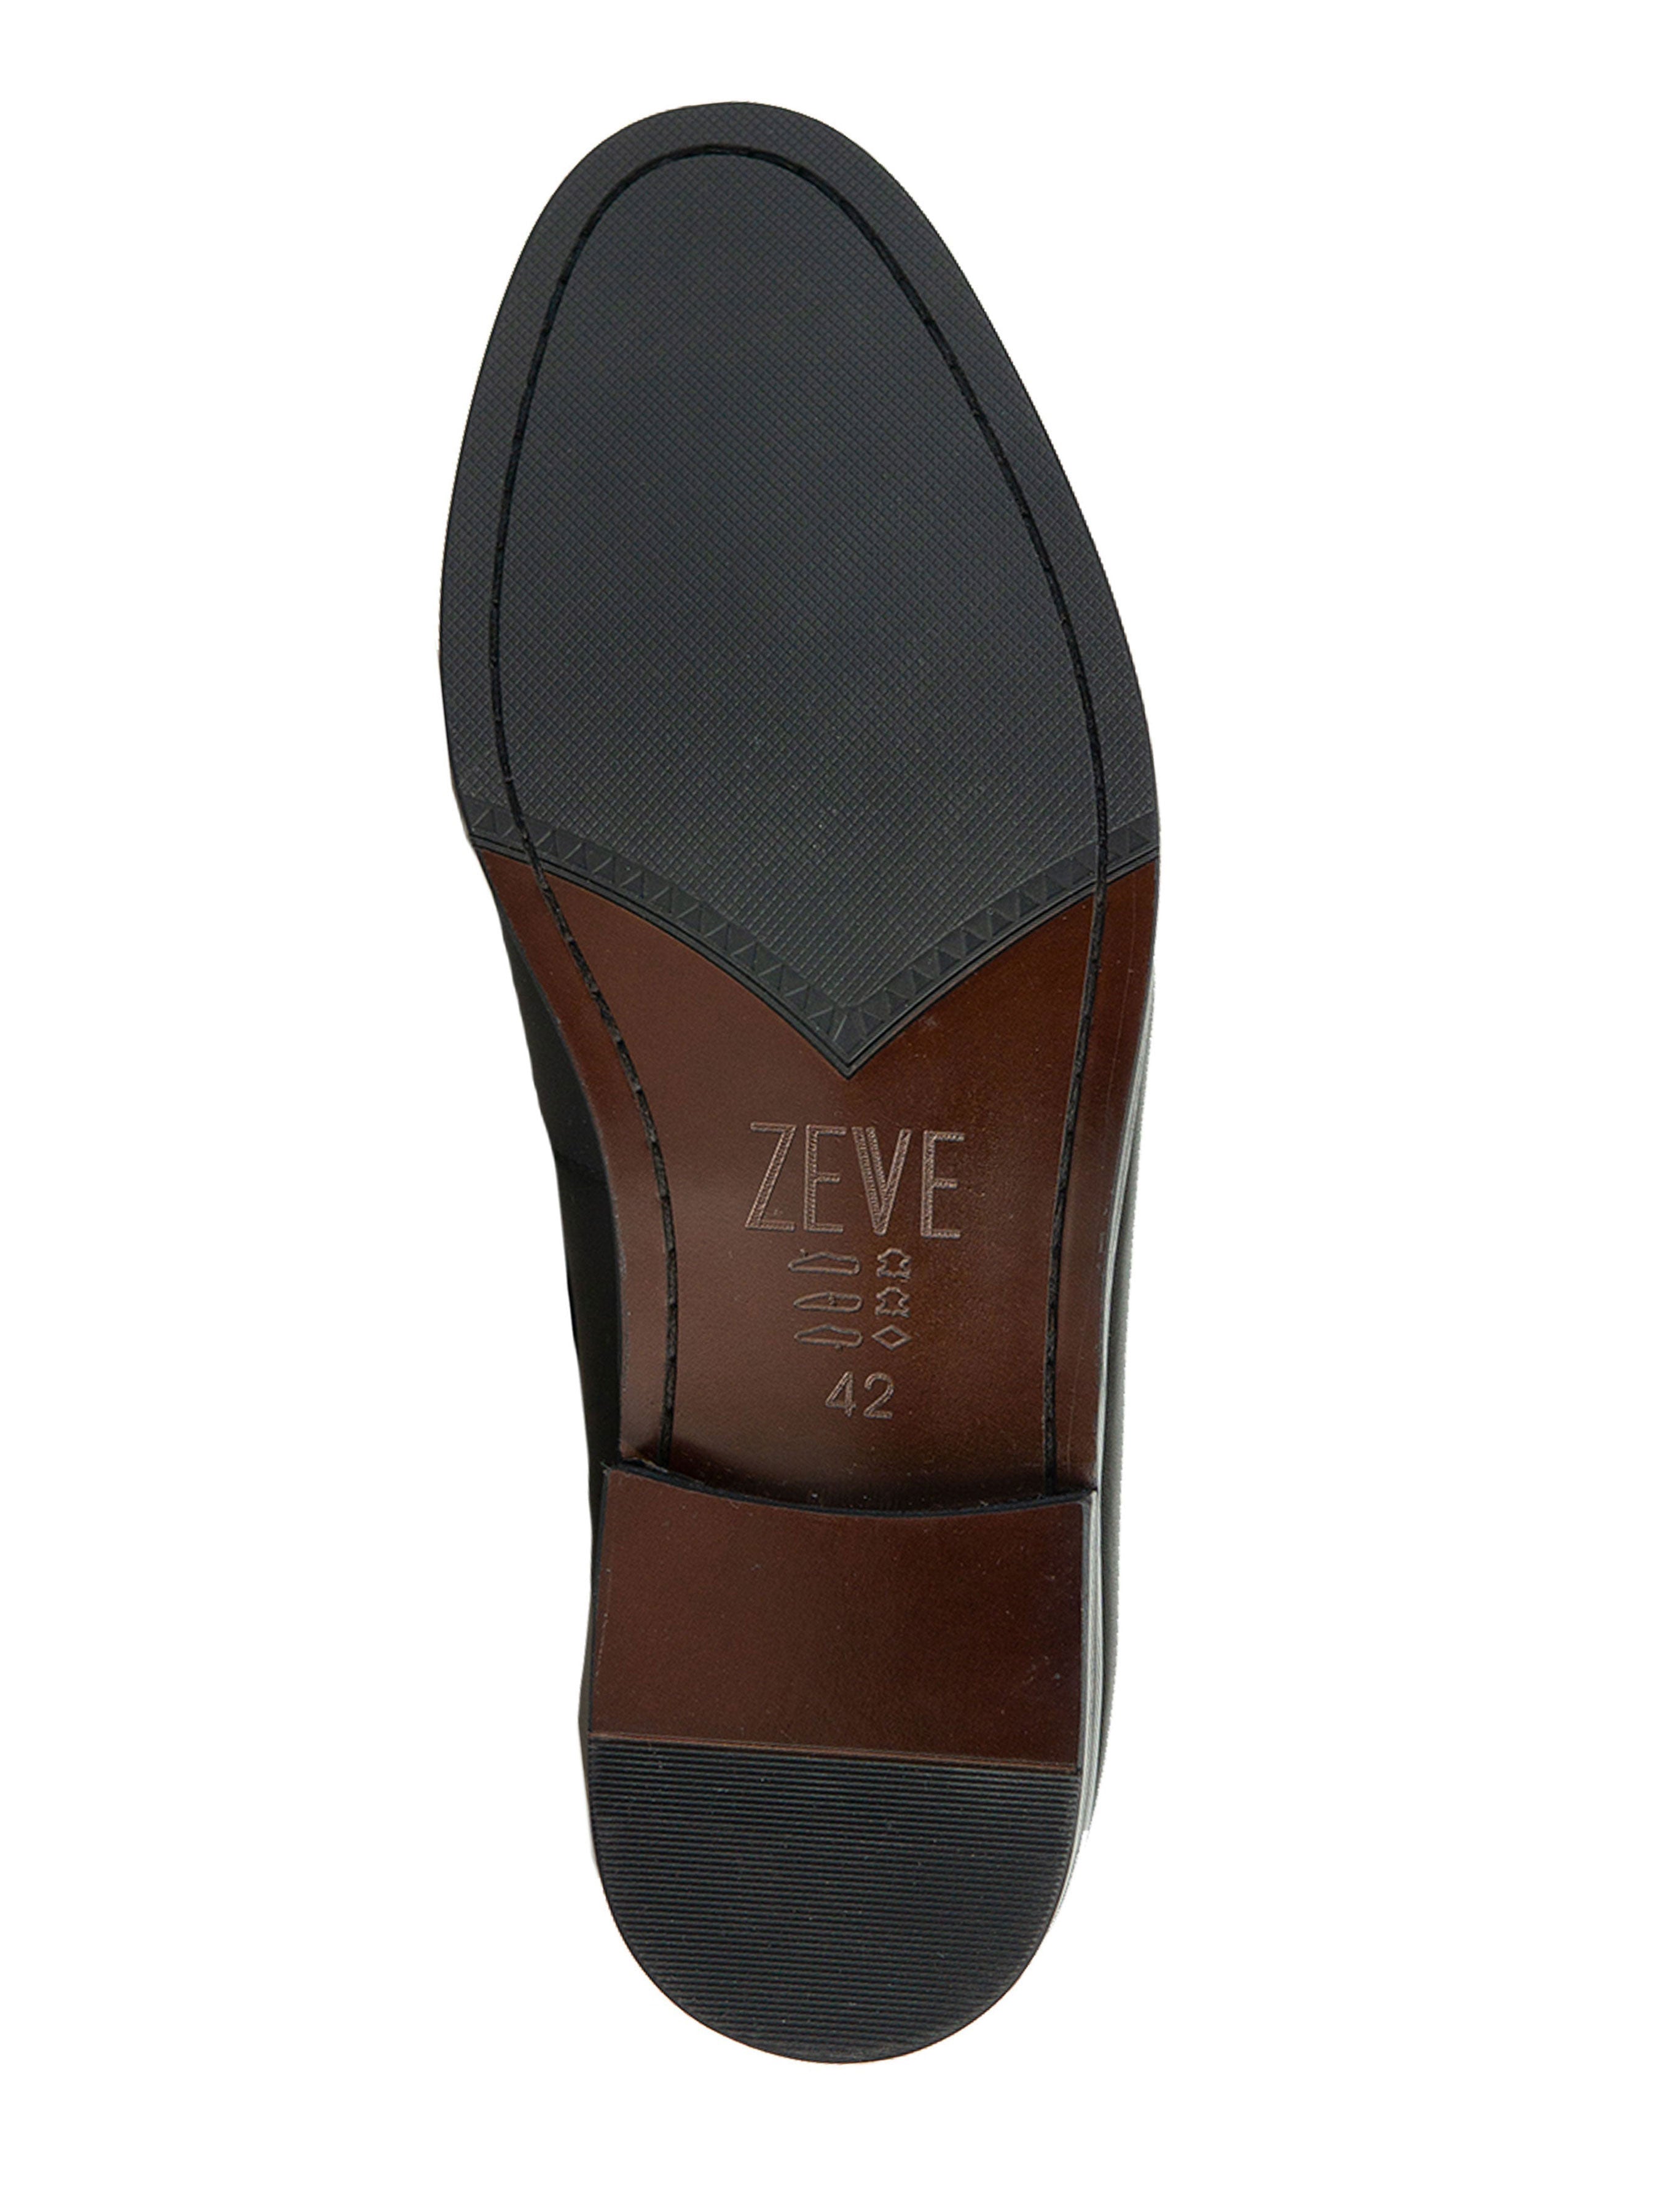 Tassel Loafer - Black Polished Leather - Zeve Shoes